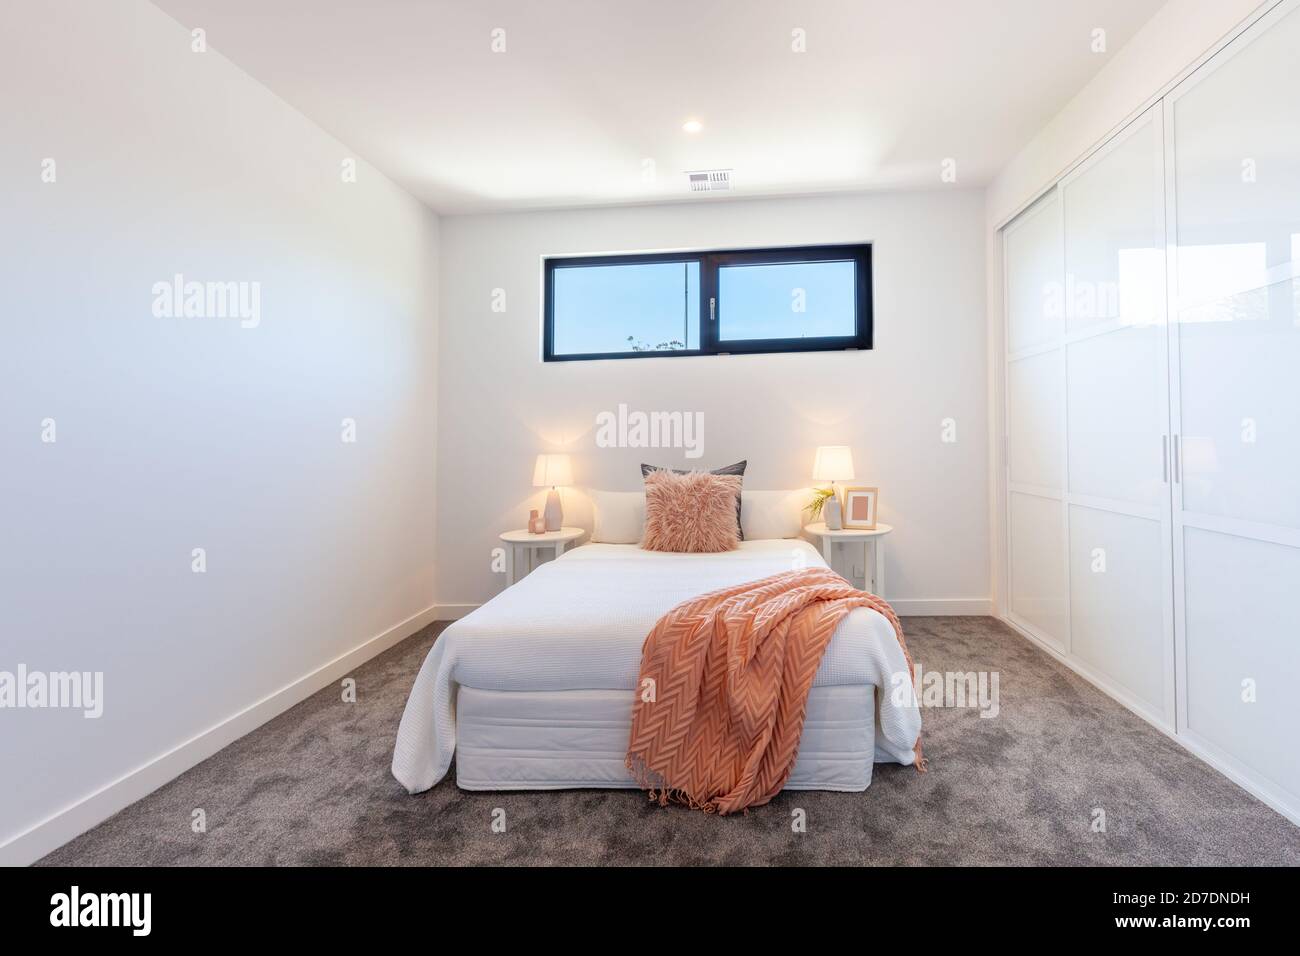 Petite chambre moderne minimaliste avec placard mural intégré Photo Stock -  Alamy